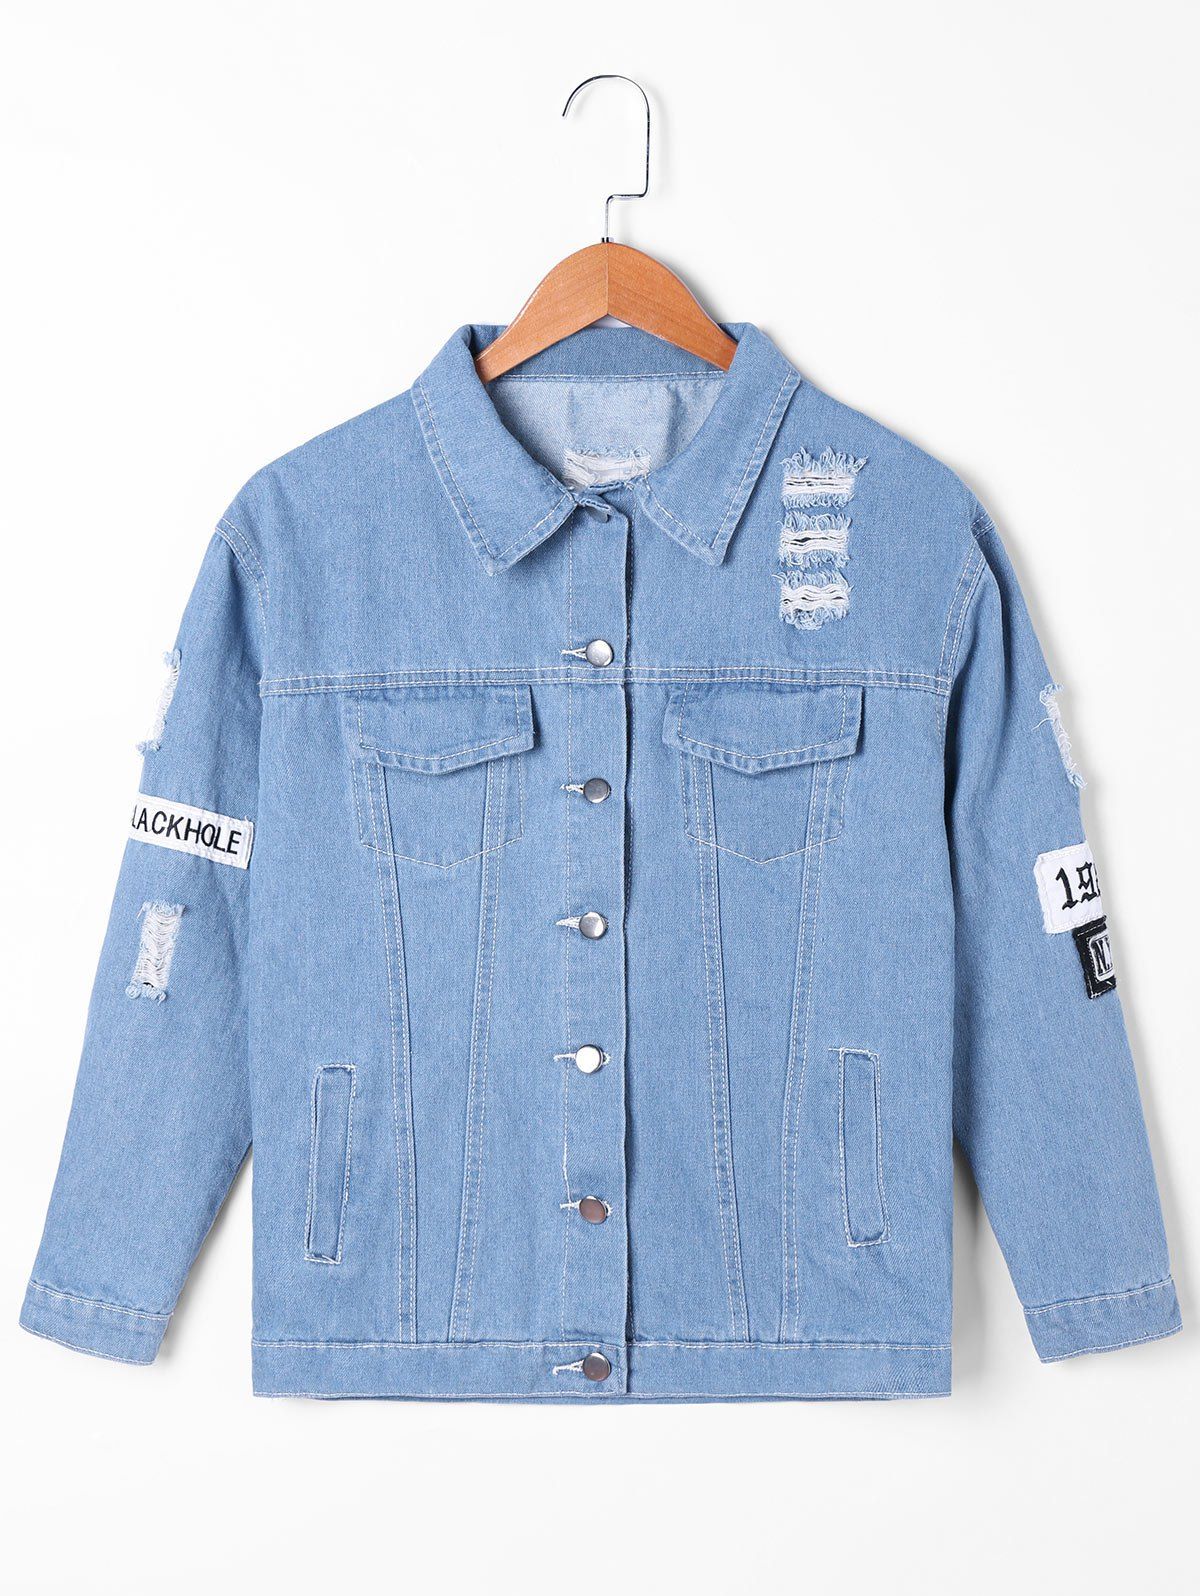 Frayed Appliqued Denim Jacket - DENIM BLUE XL